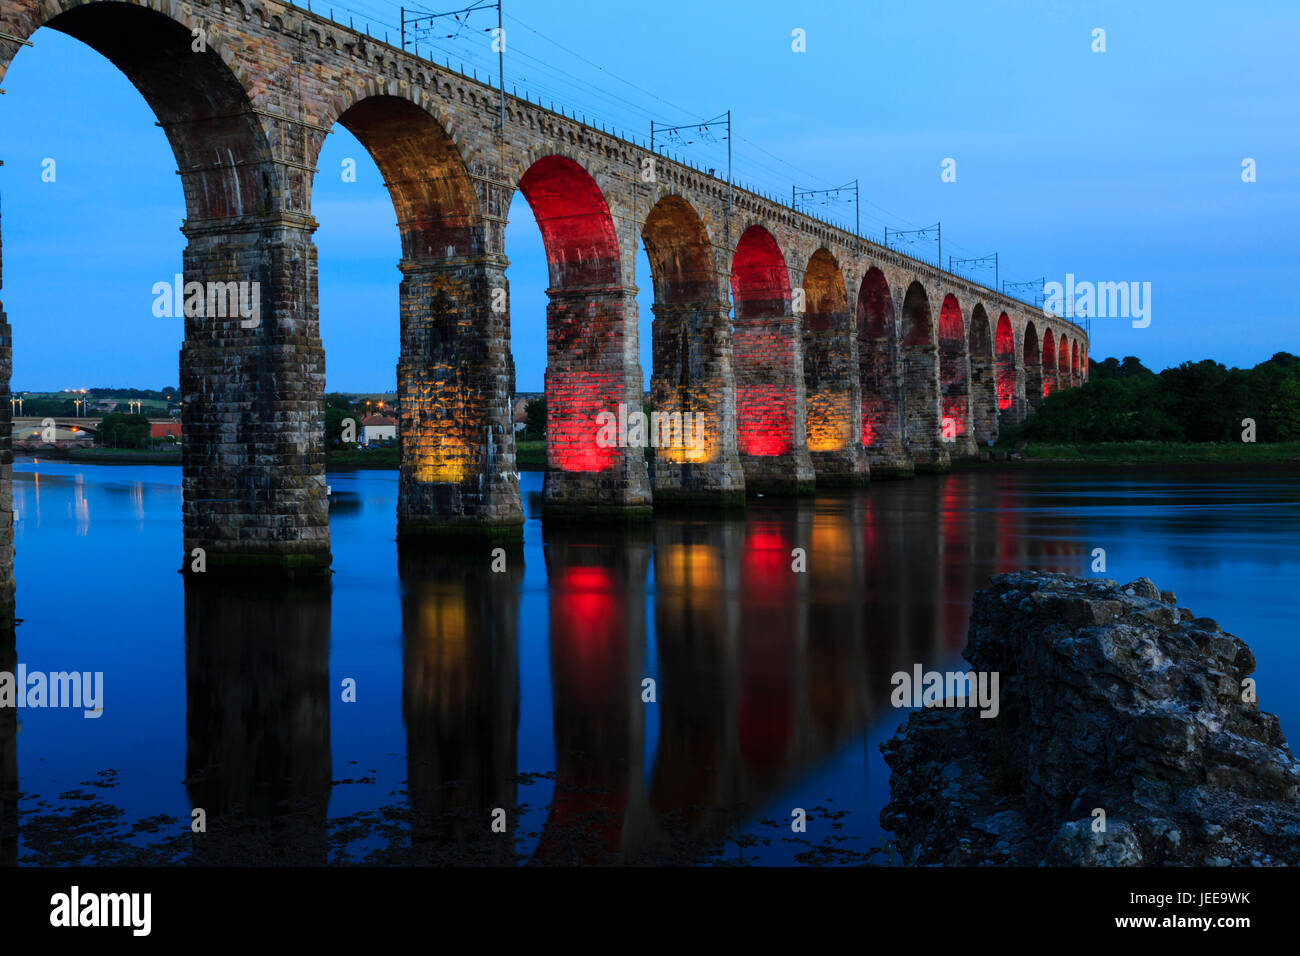 La frontière Royal pont de chemin de fer, Brixham, éclairé la nuit en rouge et jaune. Northumberland, Angleterre. Banque D'Images